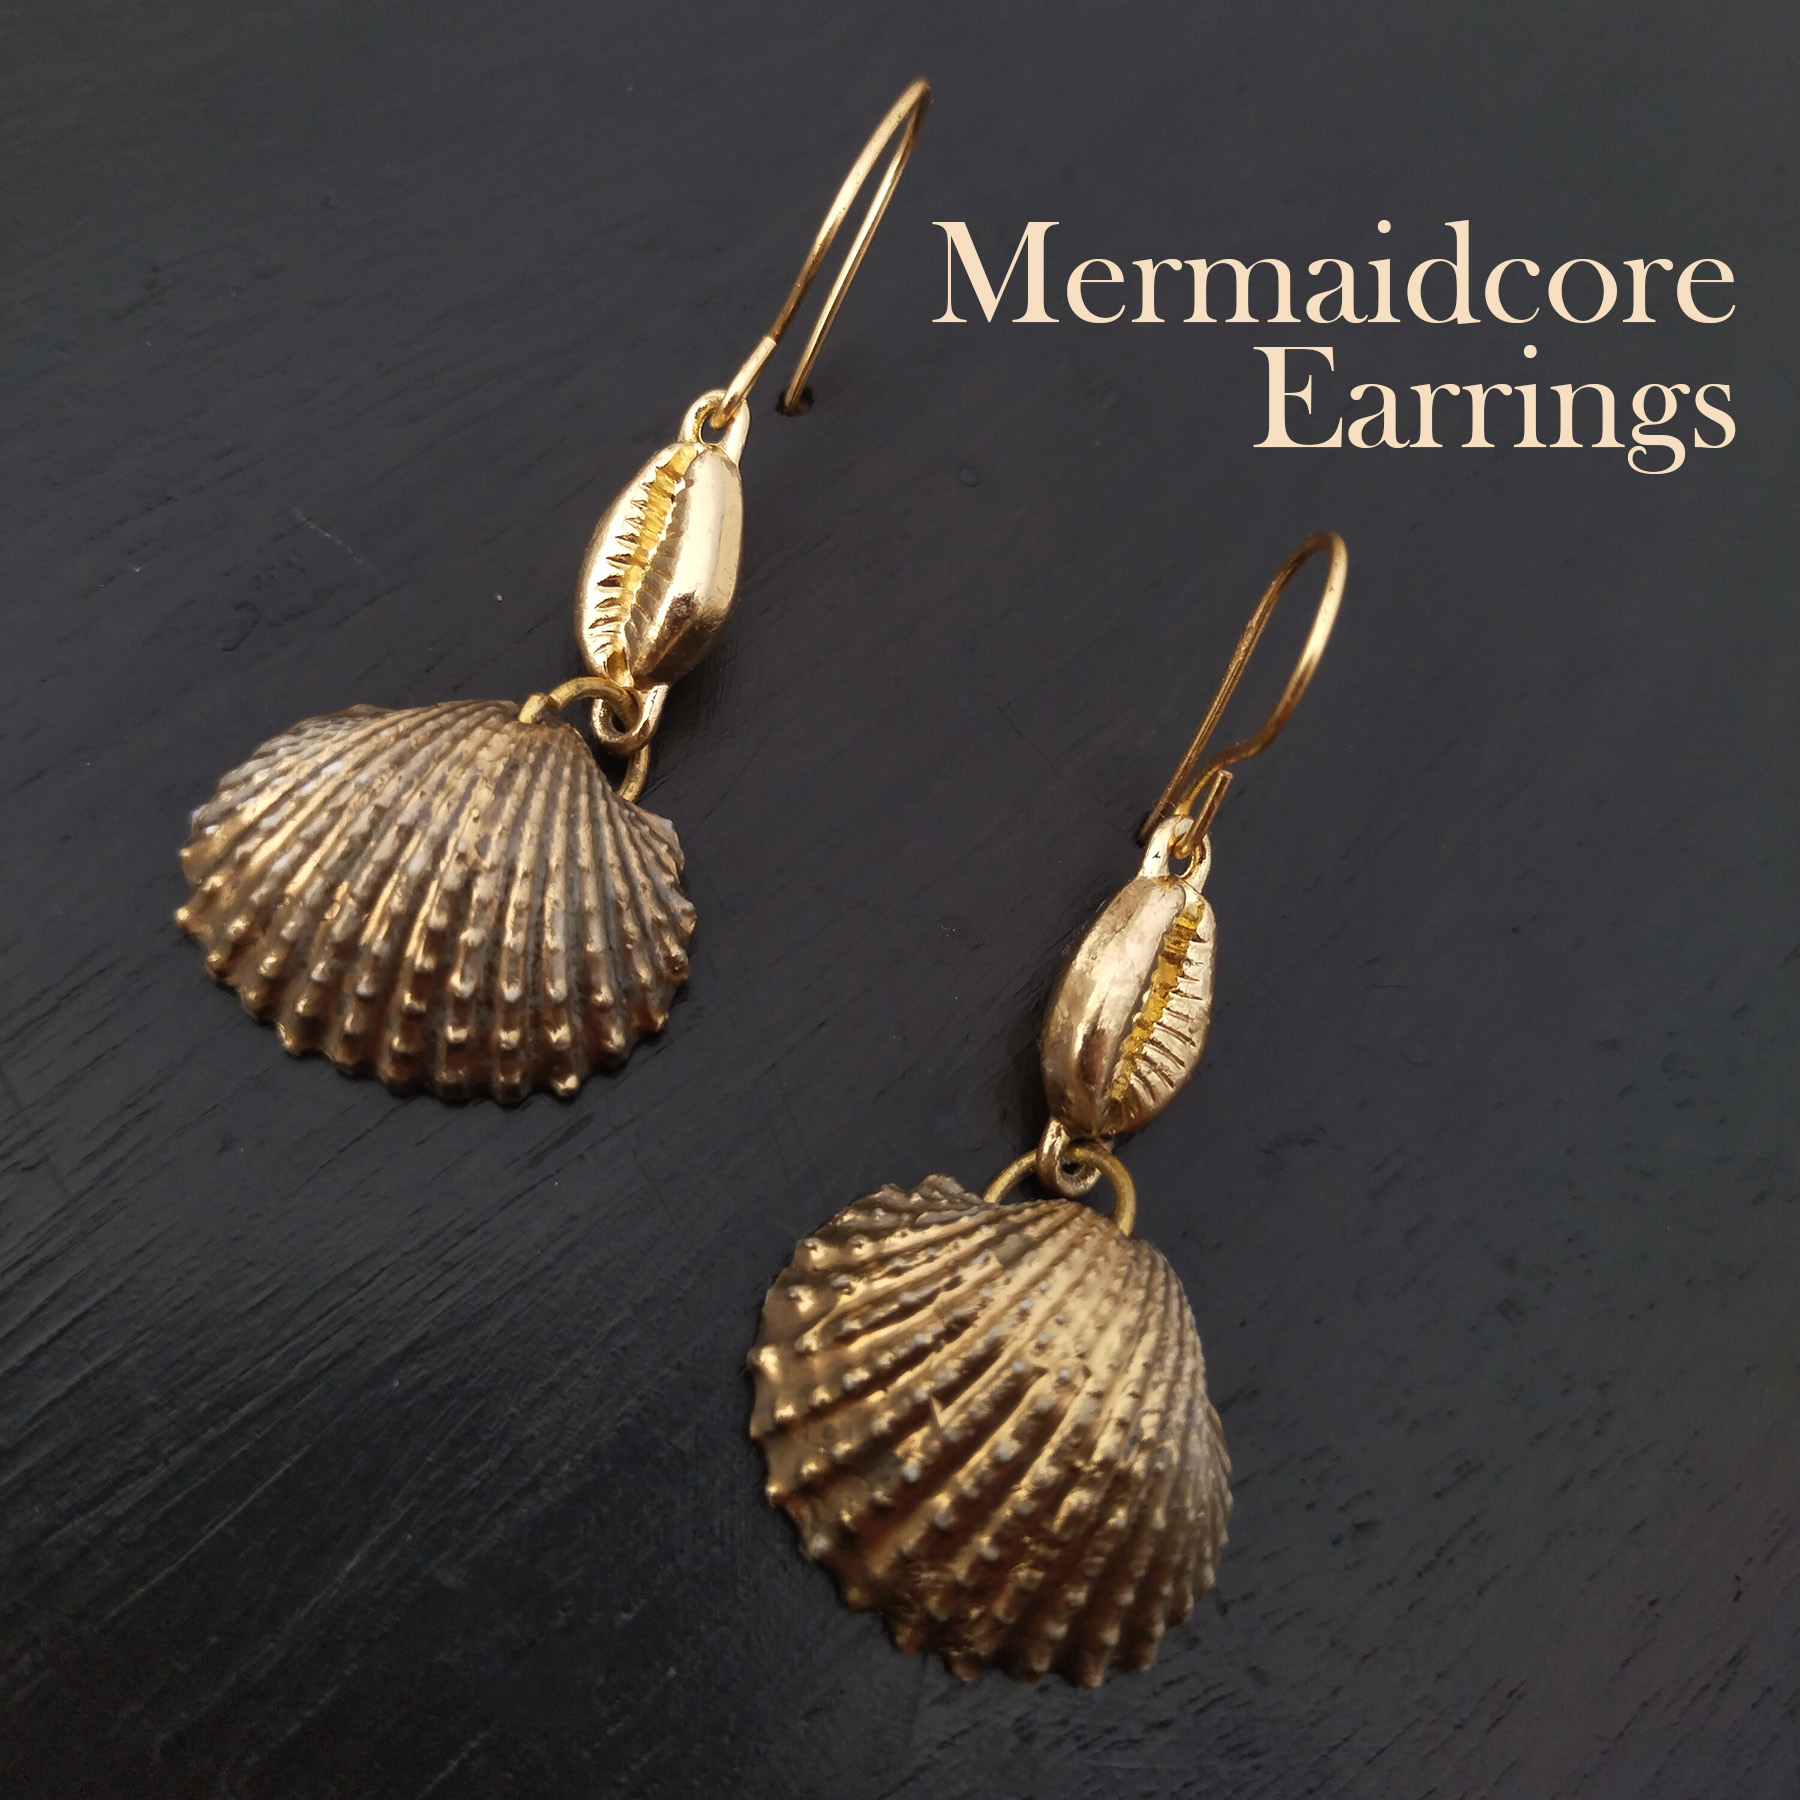 mermaidcore earrings